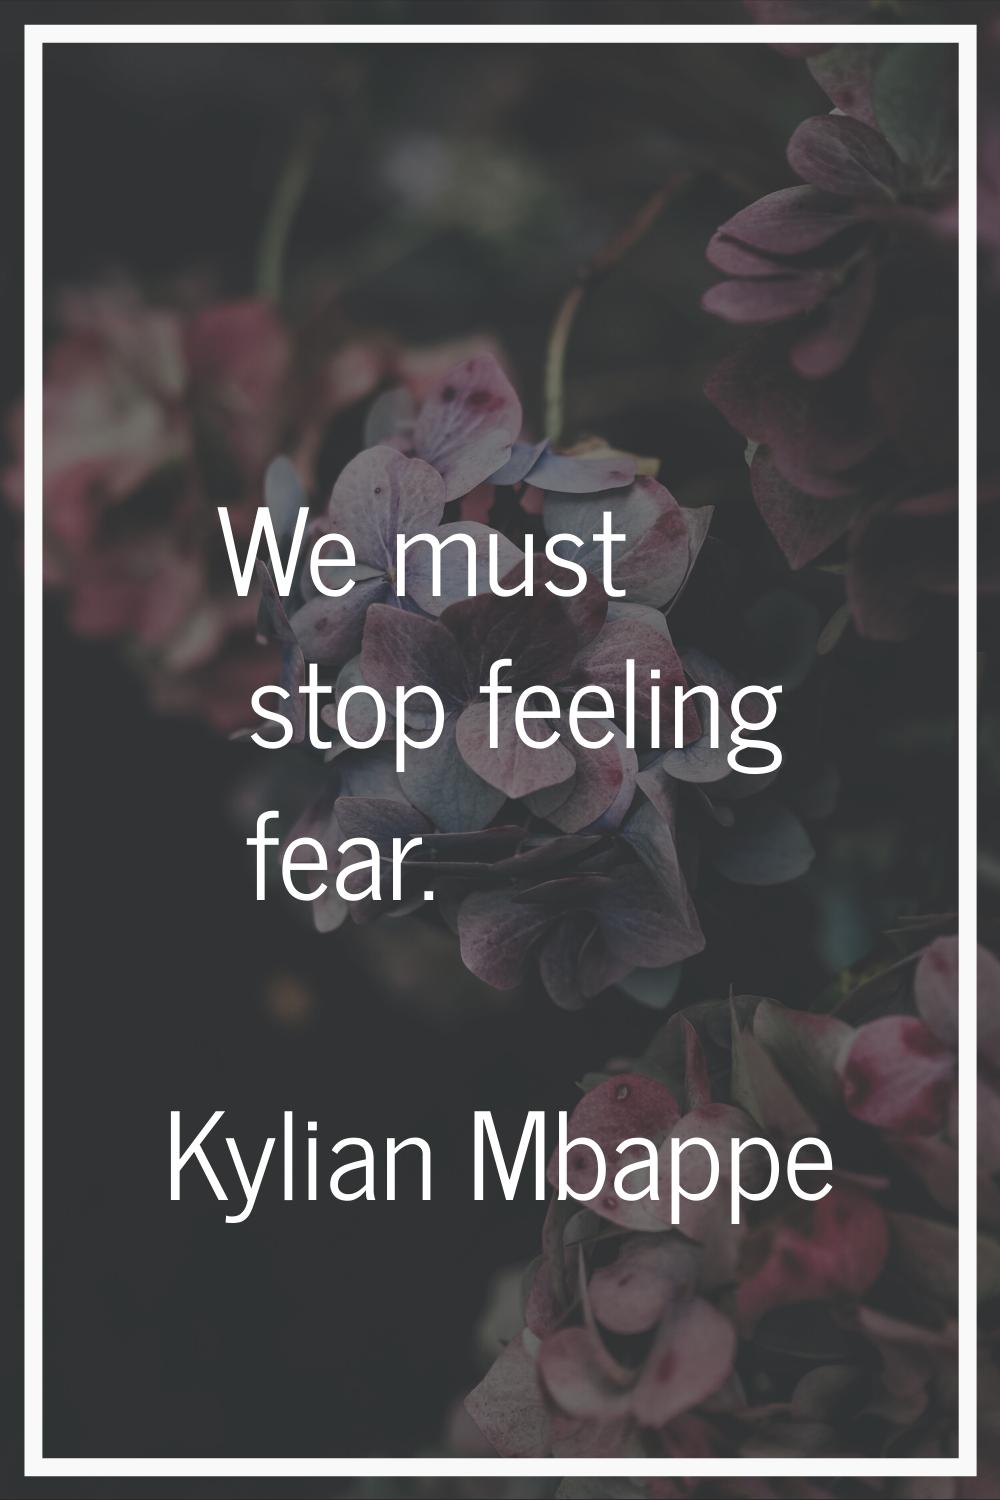 We must stop feeling fear.